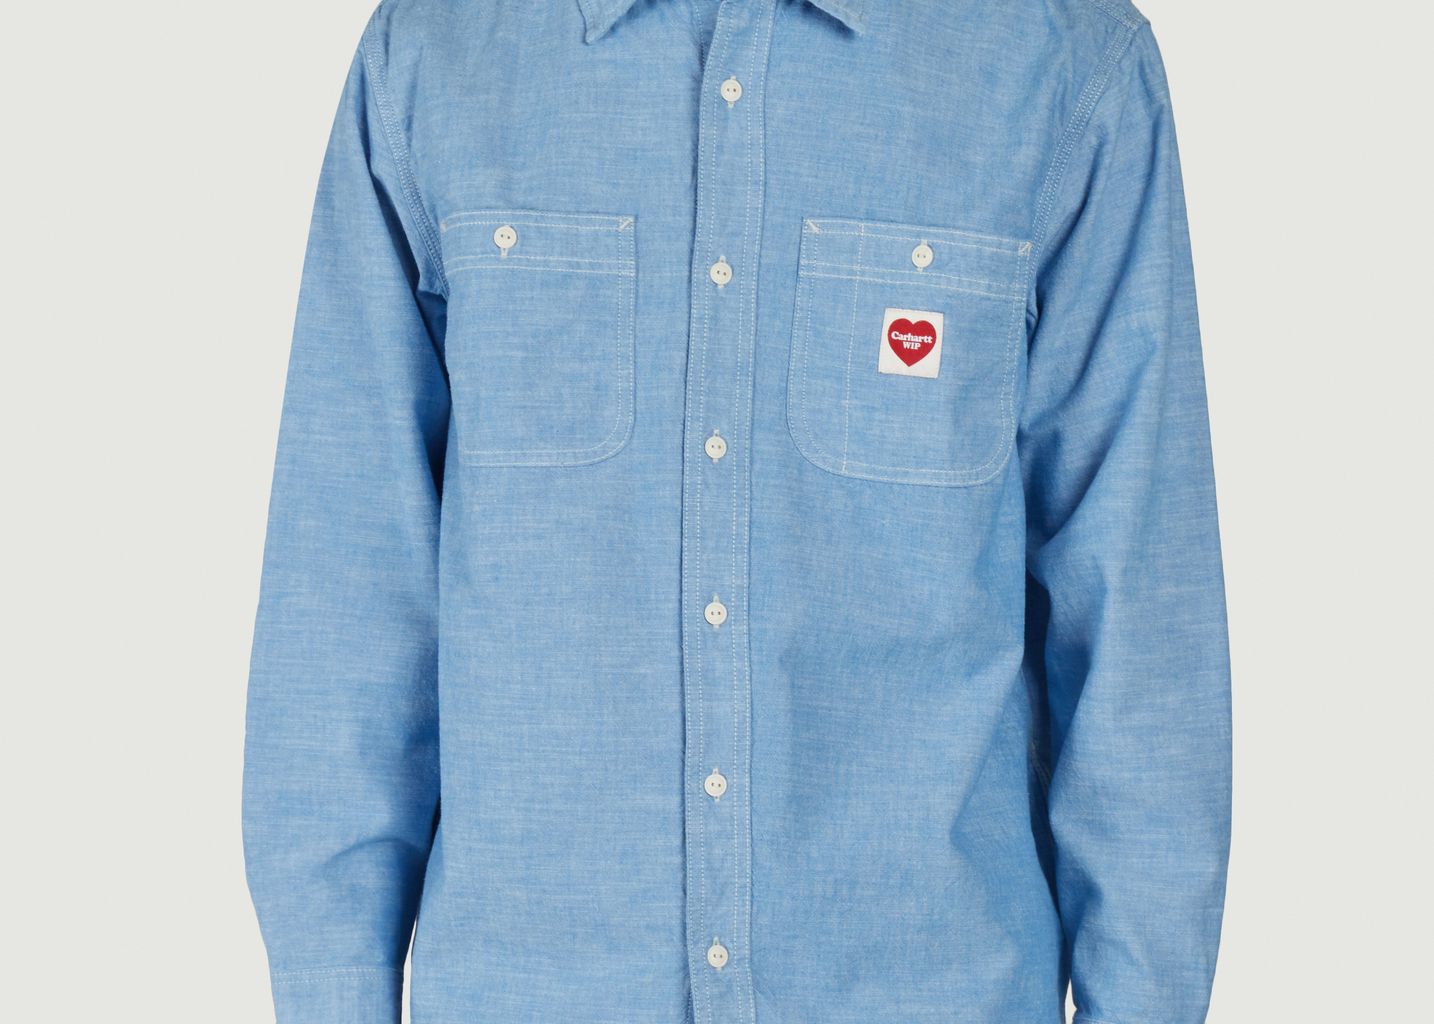 Clink Heart shirt - Carhartt WIP